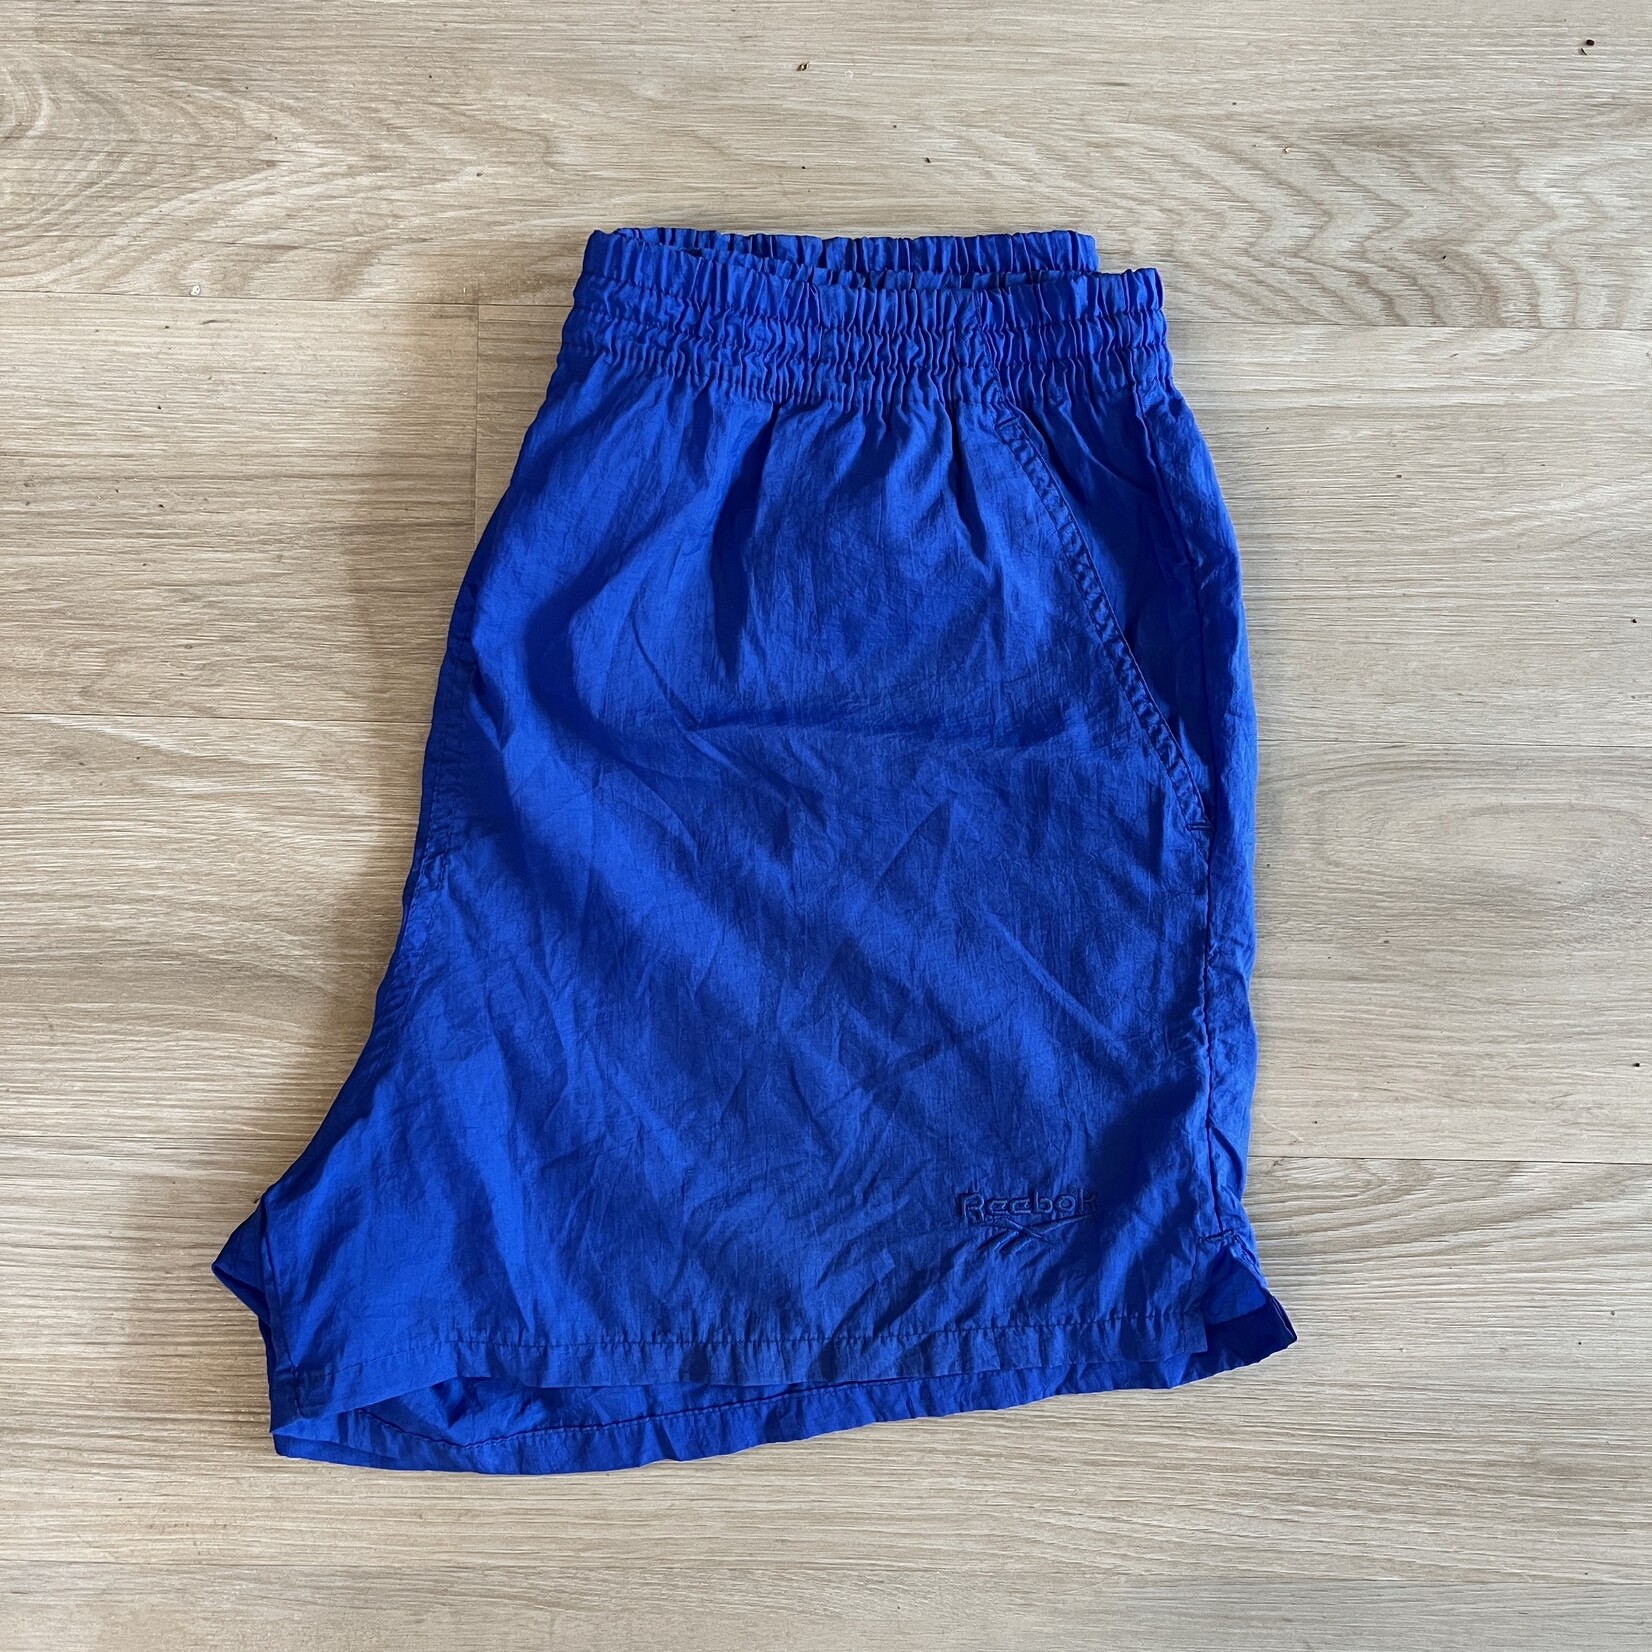 13845	reebok shorts blue sz L